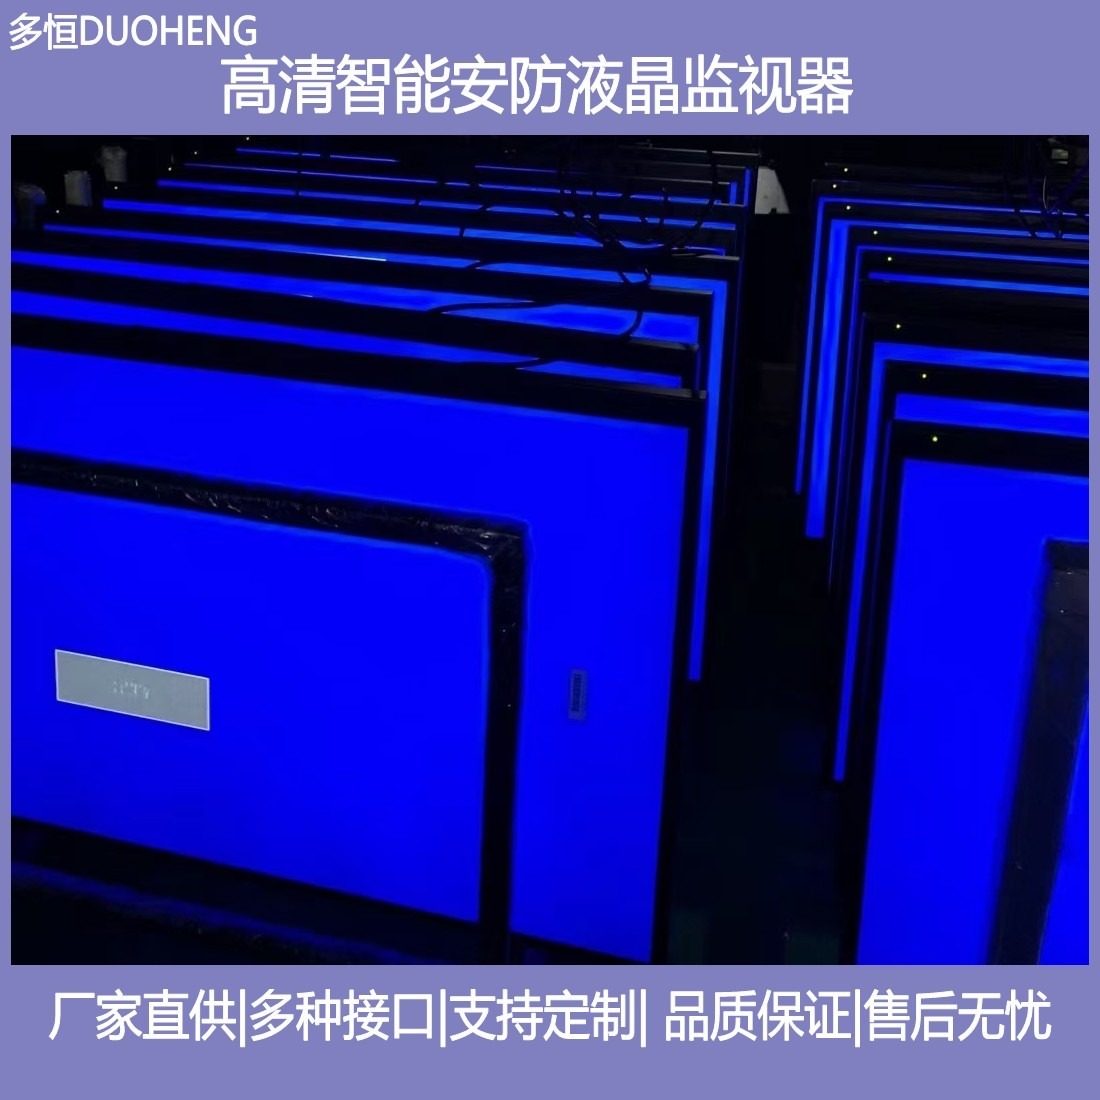 南京监视器厂家供应55寸工业4K高清液晶监视器 安防监控显示屏